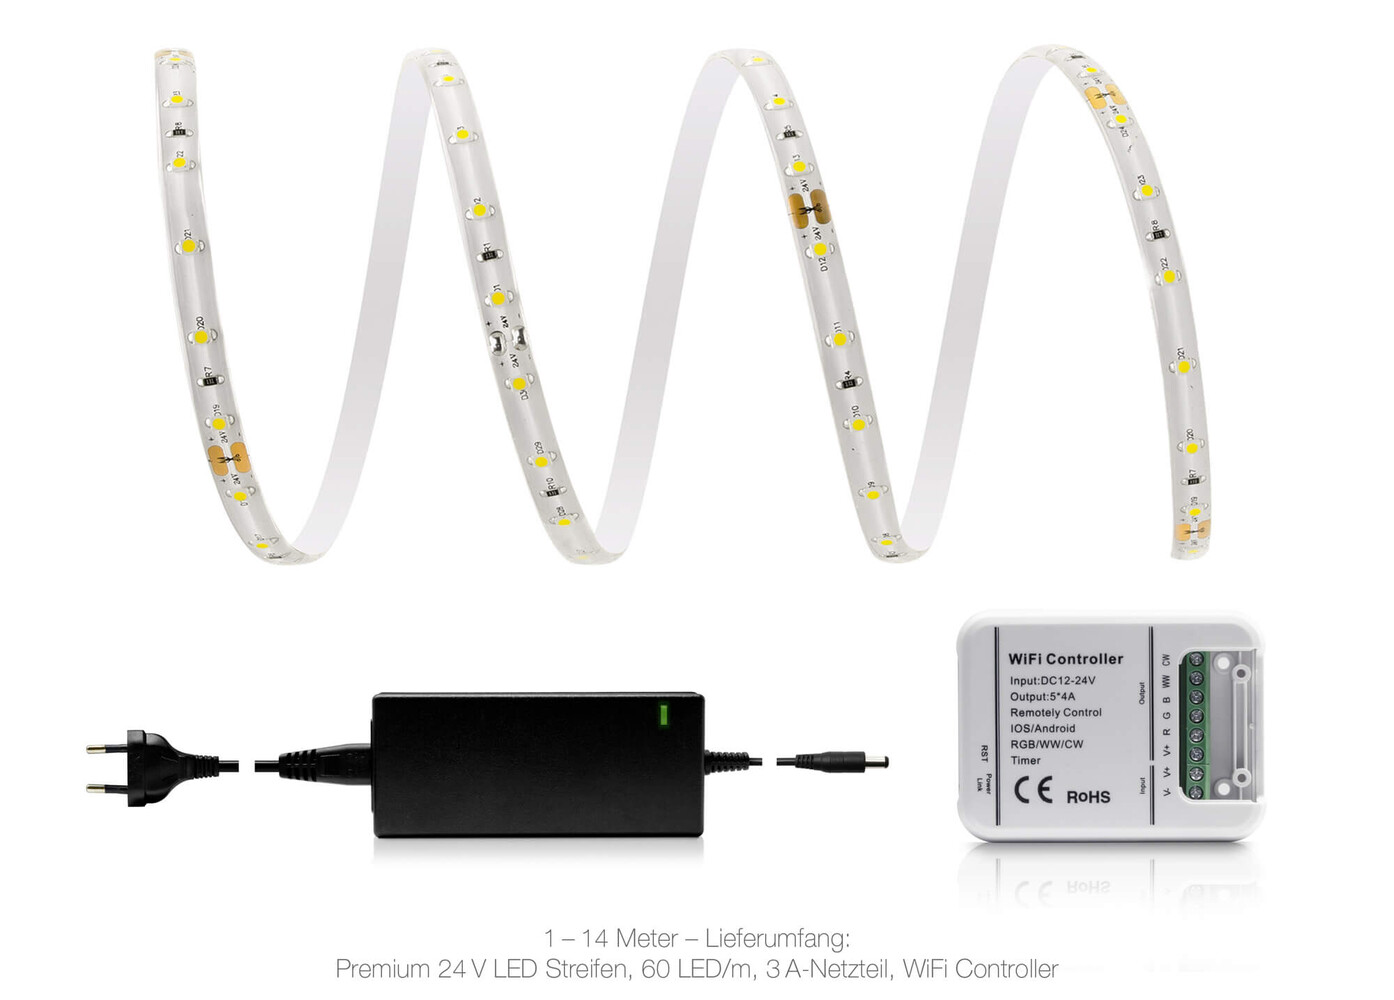 Premium LED Streifen in neutralweiß, 60 LEDs pro Meter, WLAN-fähig und wasserfest, von LED Universum